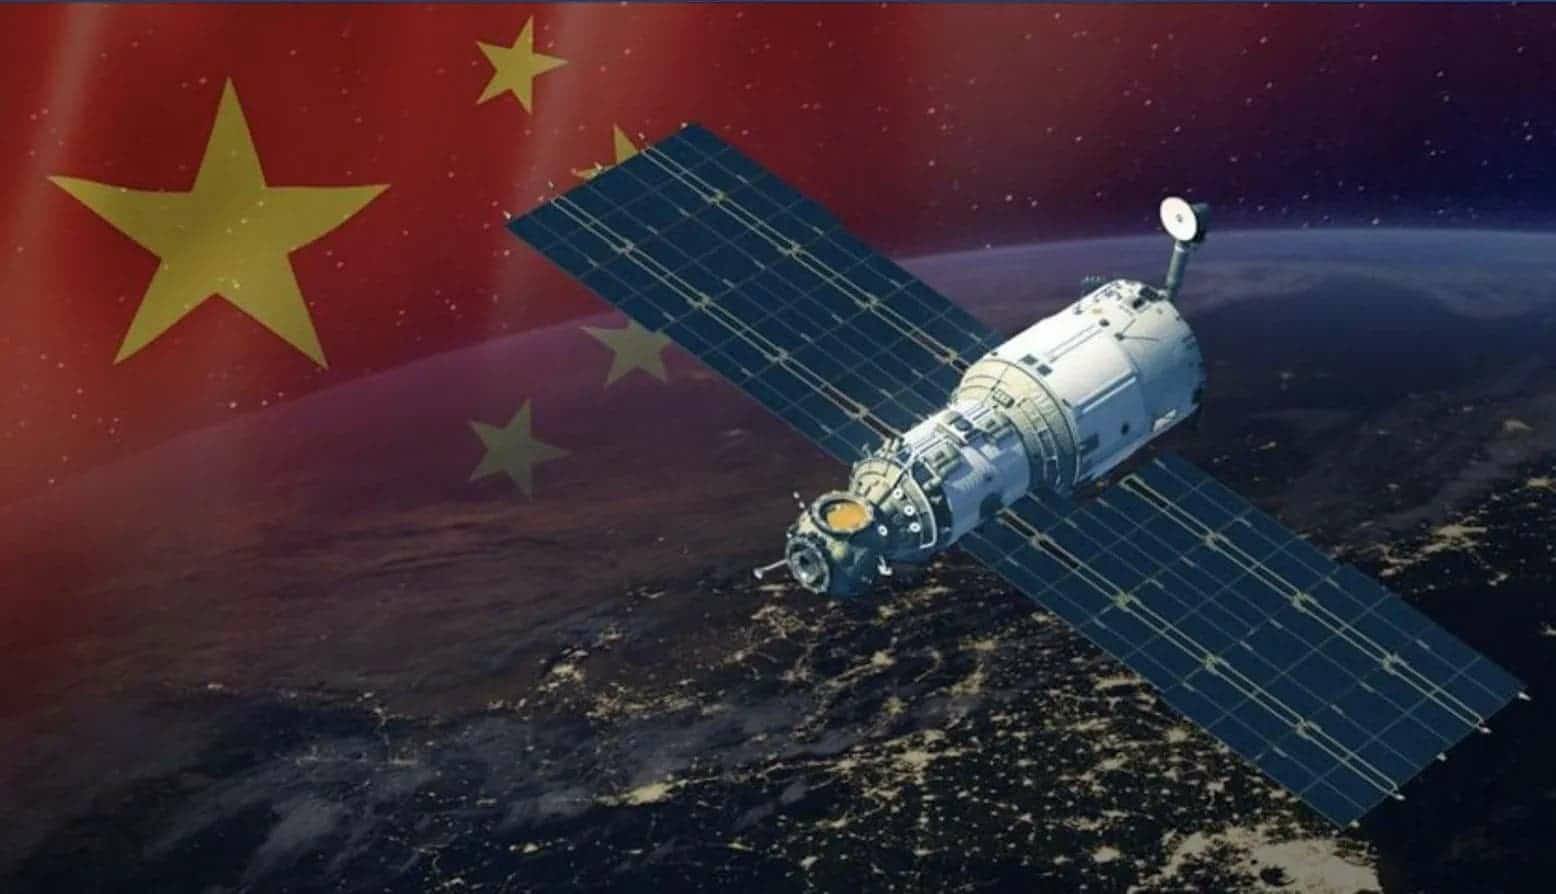 چین قصد دارد ماهواره های استارلینک ایلان ماسک را نابود یا غيرفعال کند؟